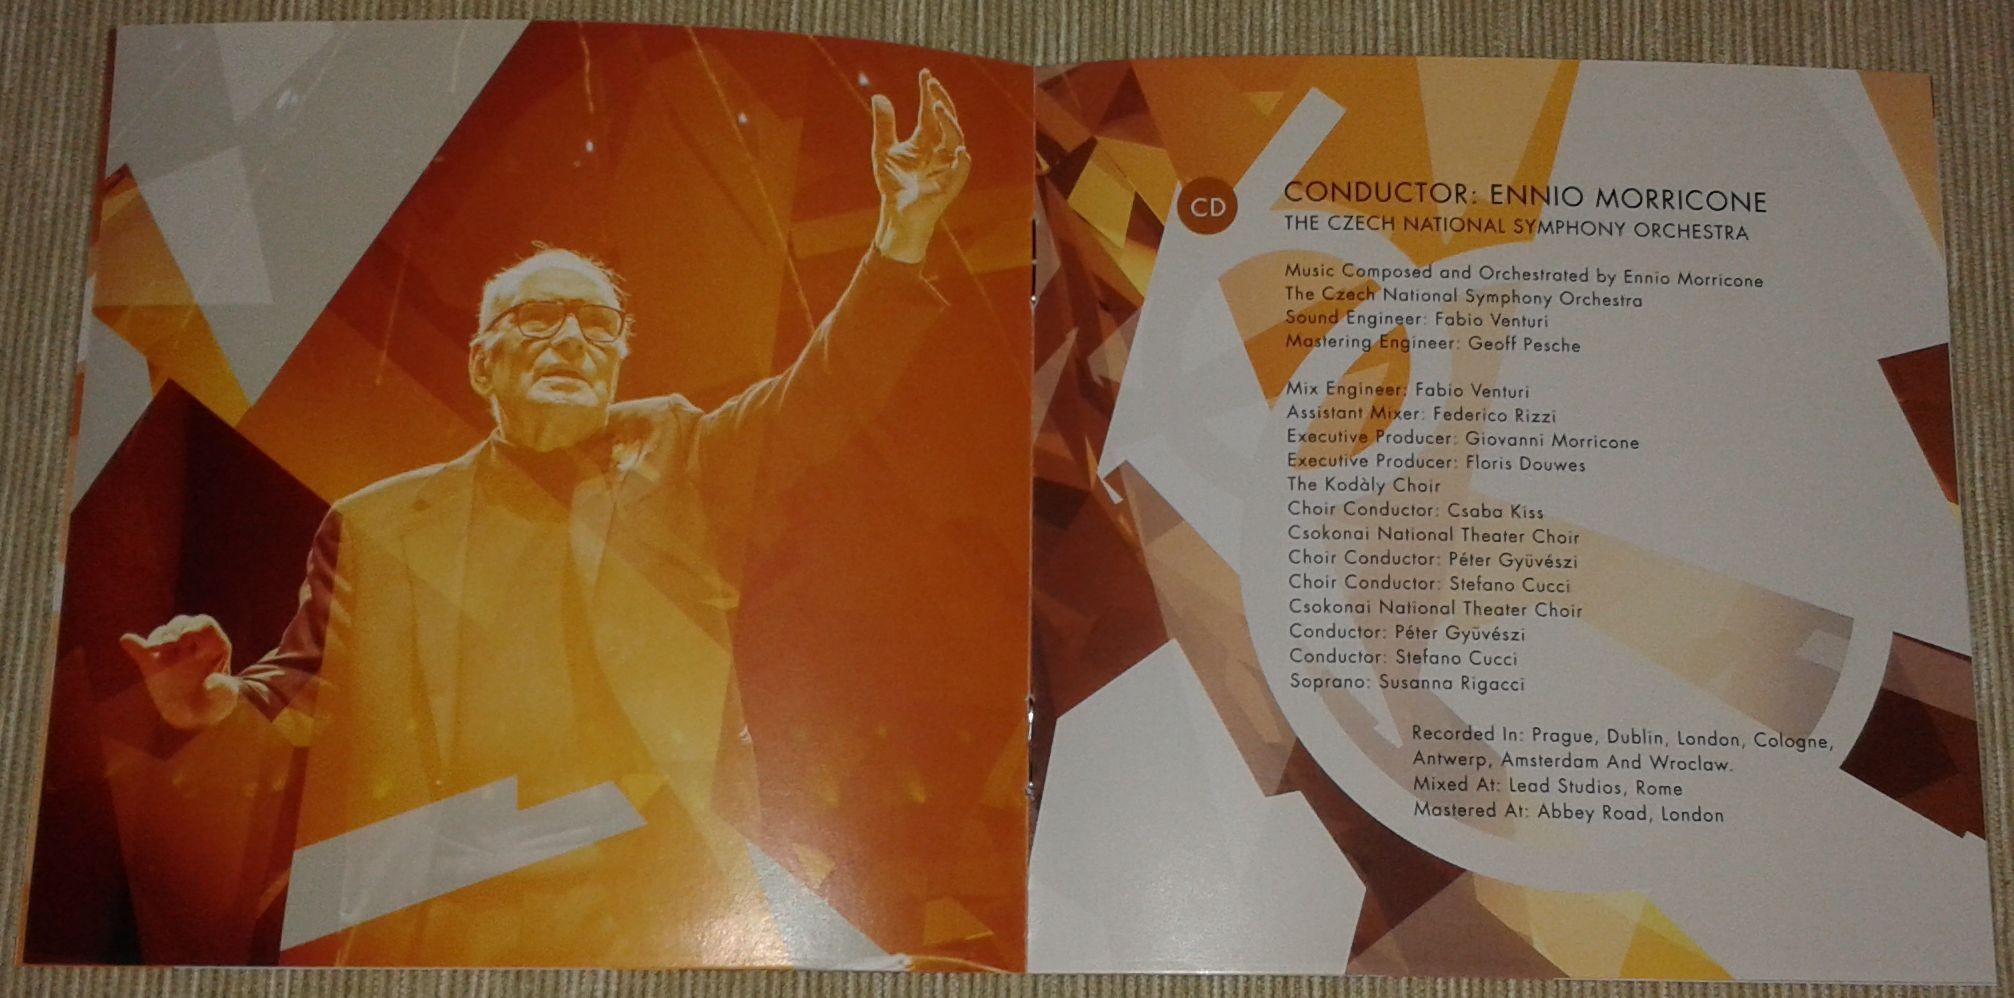 7. Ennio Morricone Deluxe CD, DVD booklet 3.jpg